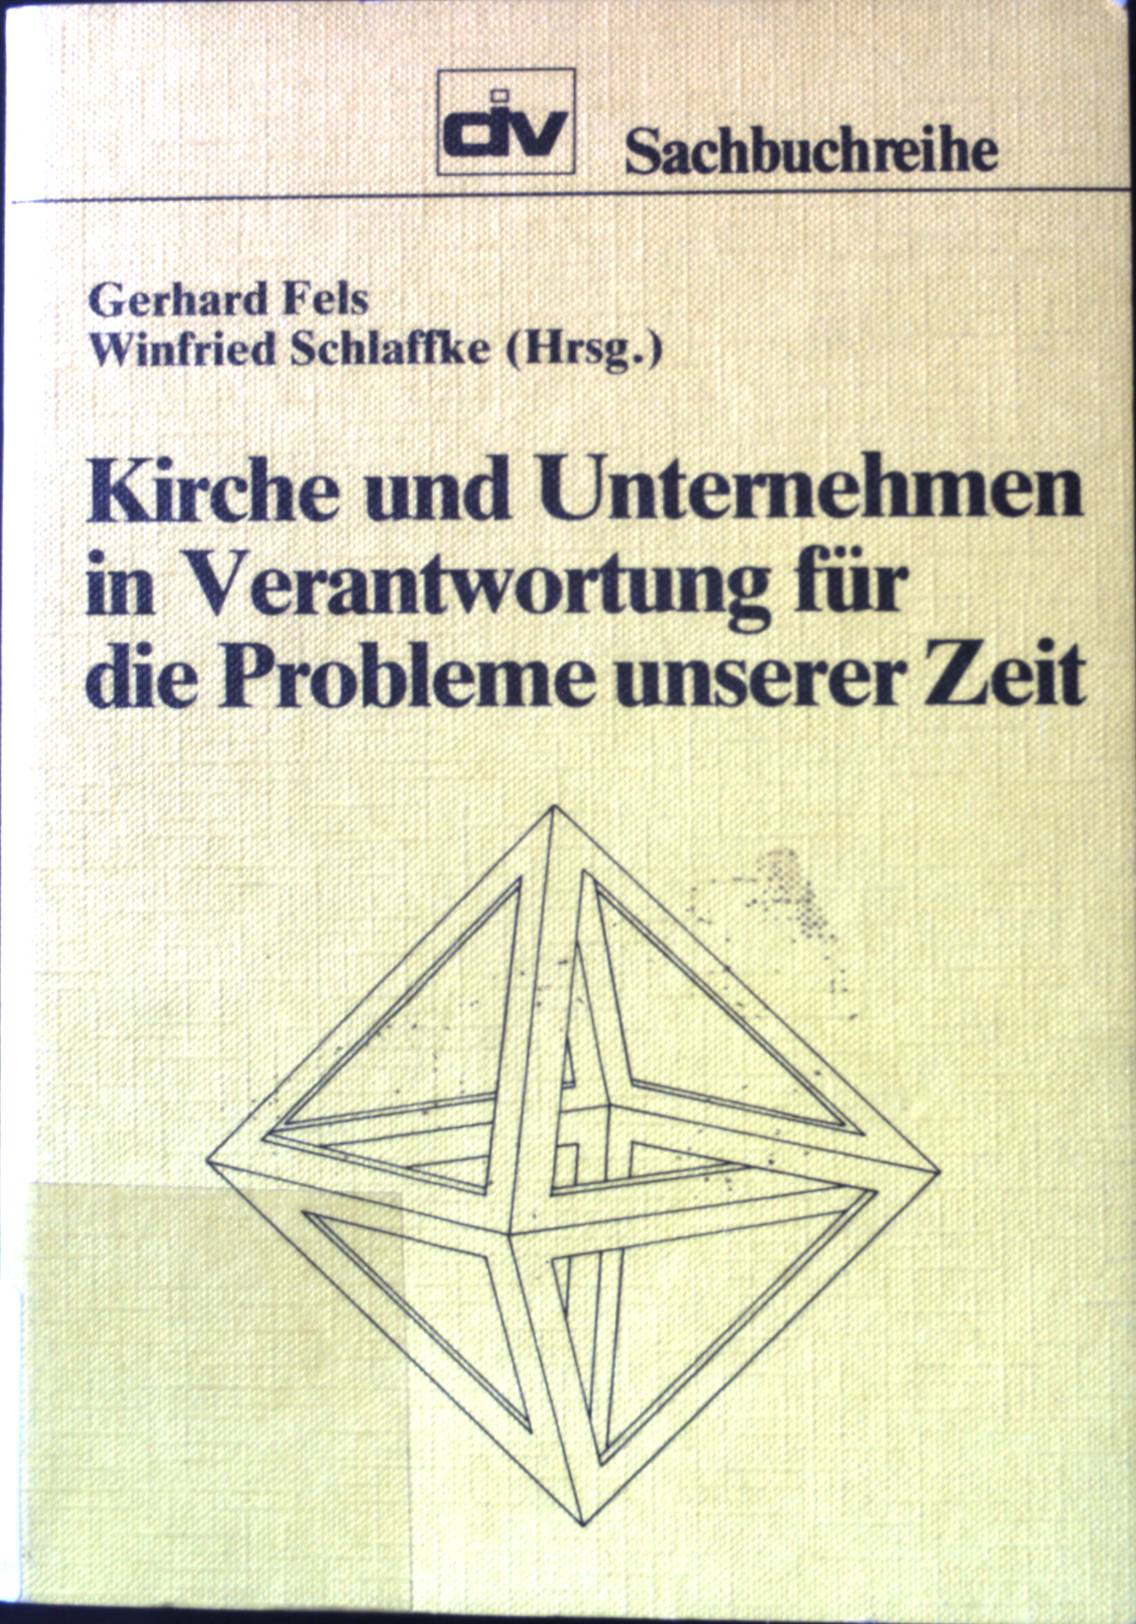 Kirche und Unternehmen in Verantwortung für die Probleme unserer Zeit. Div-Sachbuchreihe ; 35. - Fels, Gerhard und Winfried Schlaffke